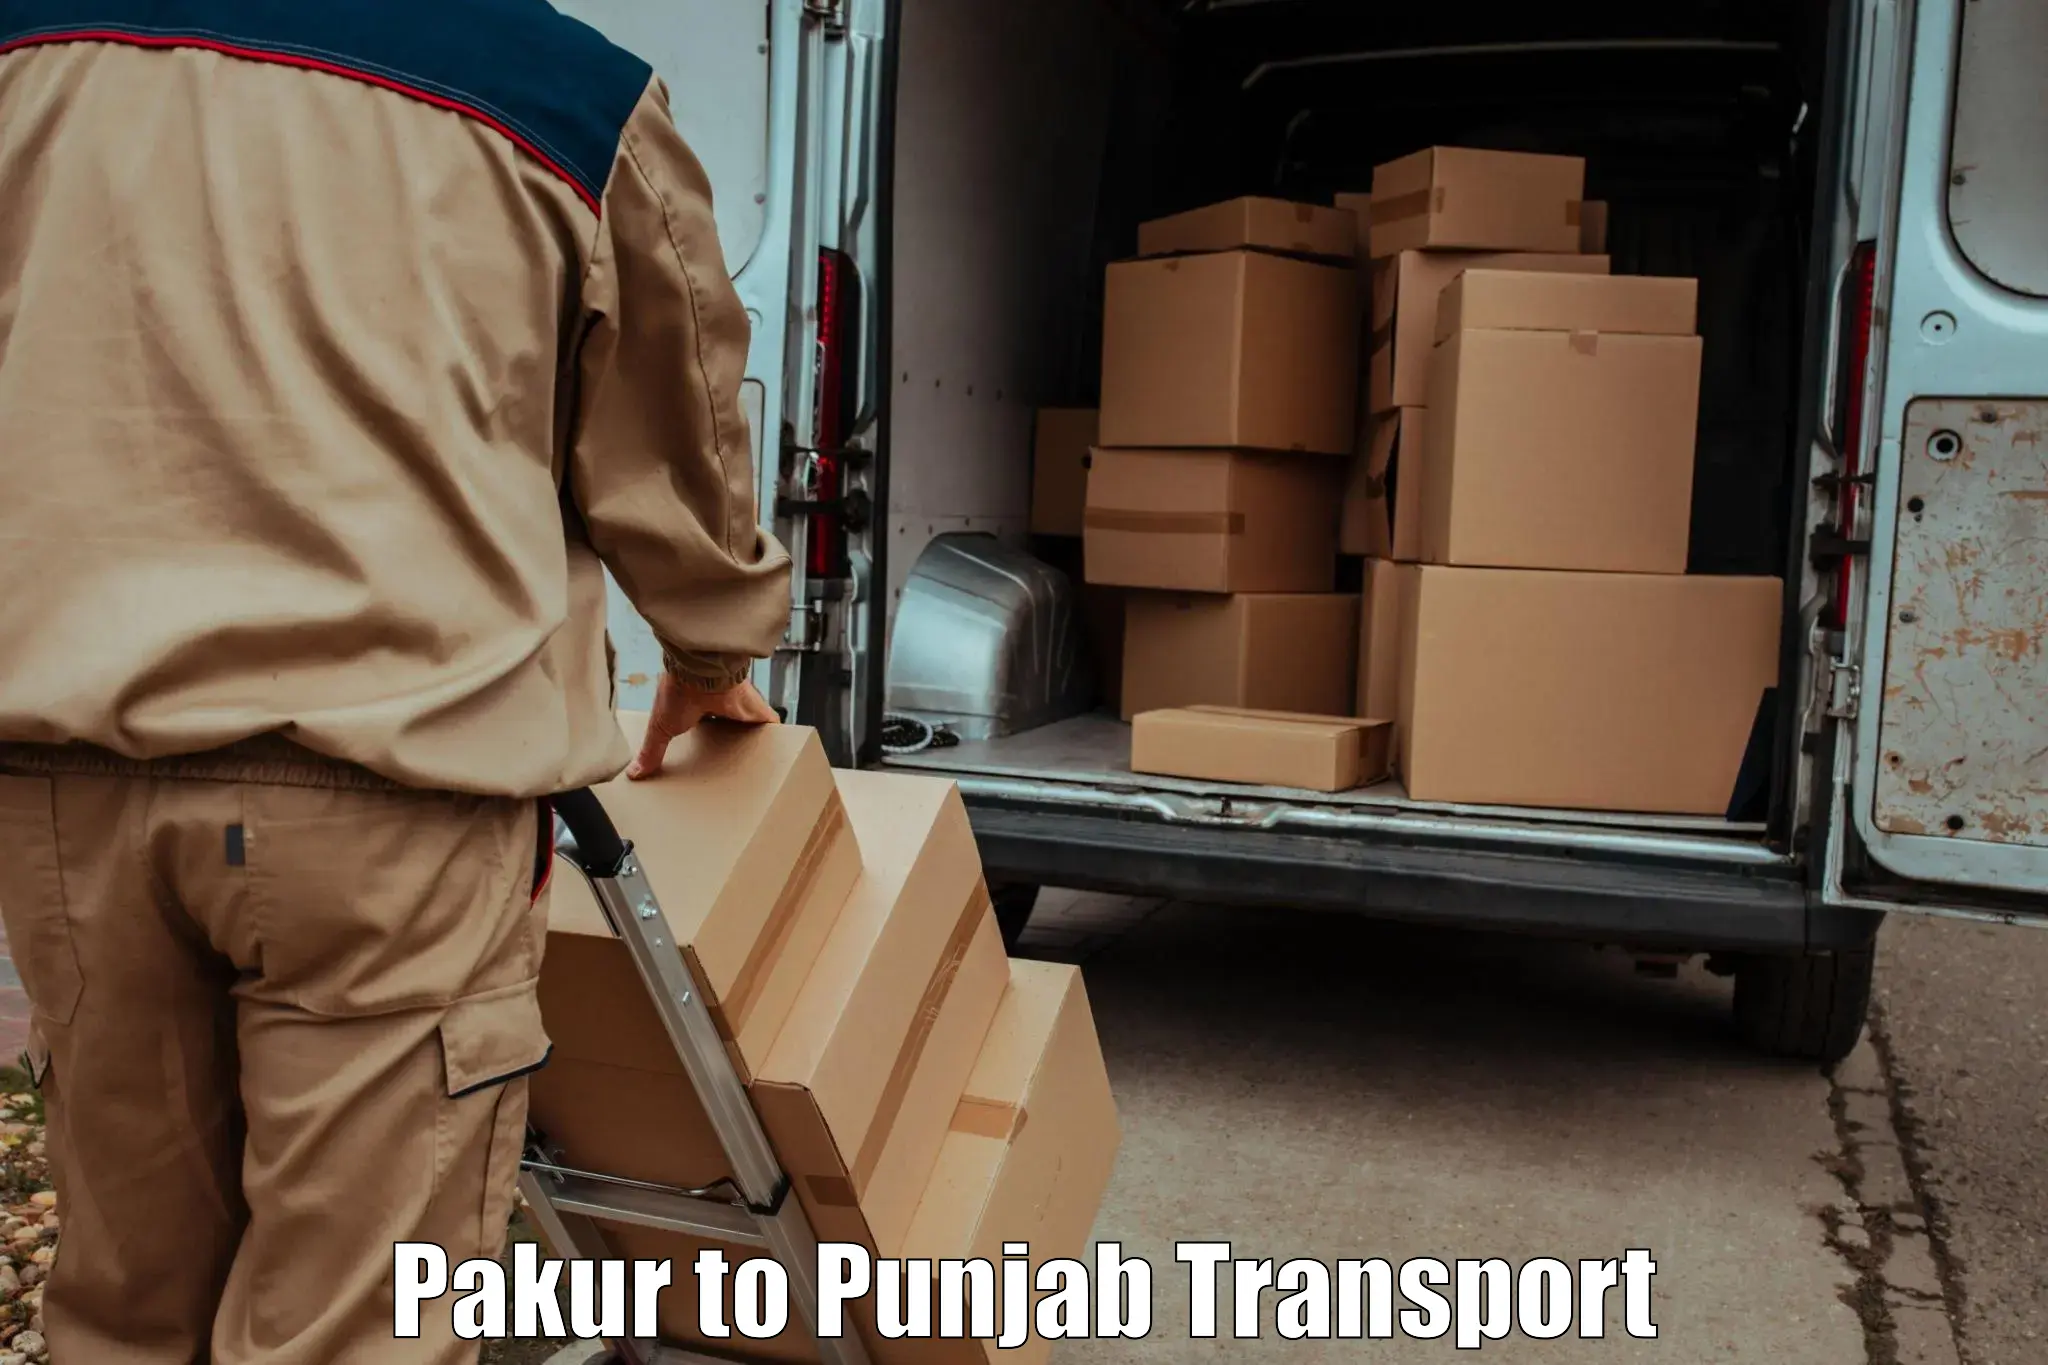 Two wheeler parcel service Pakur to Faridkot